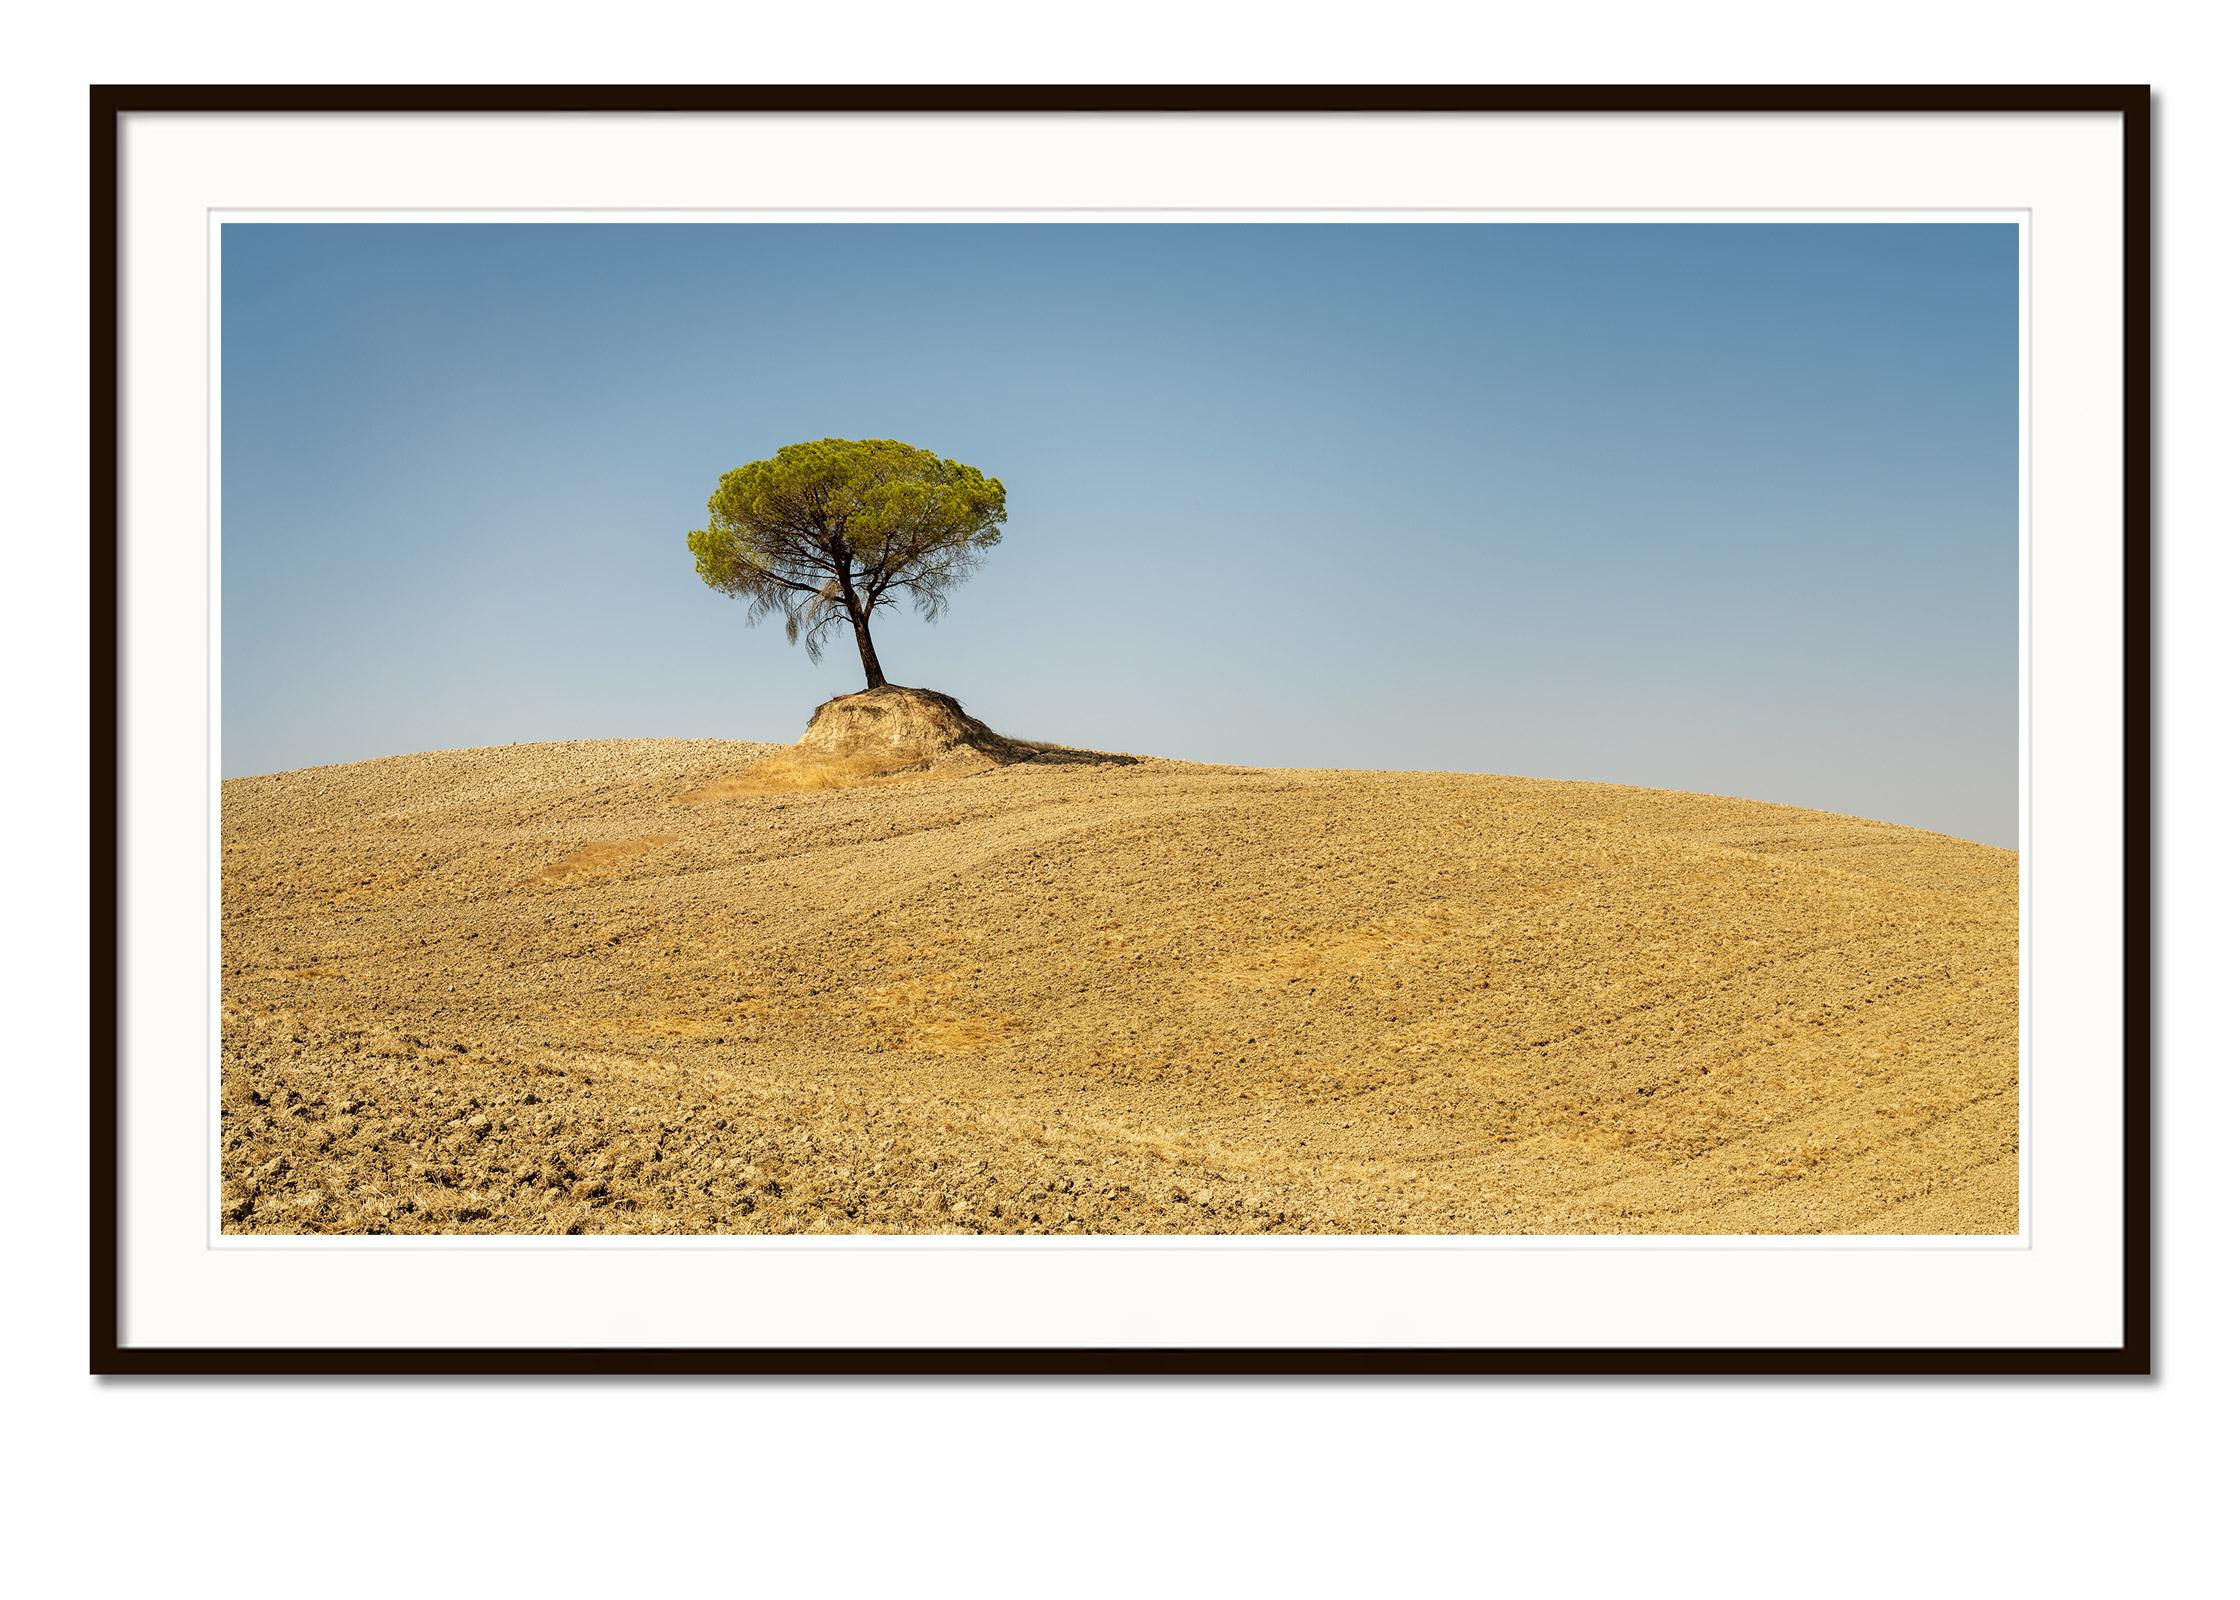 Italienische Steinkiefer, Baum, Toskana, Italien, Farbkunstfotografie, Landschaft (Zeitgenössisch), Photograph, von Gerald Berghammer